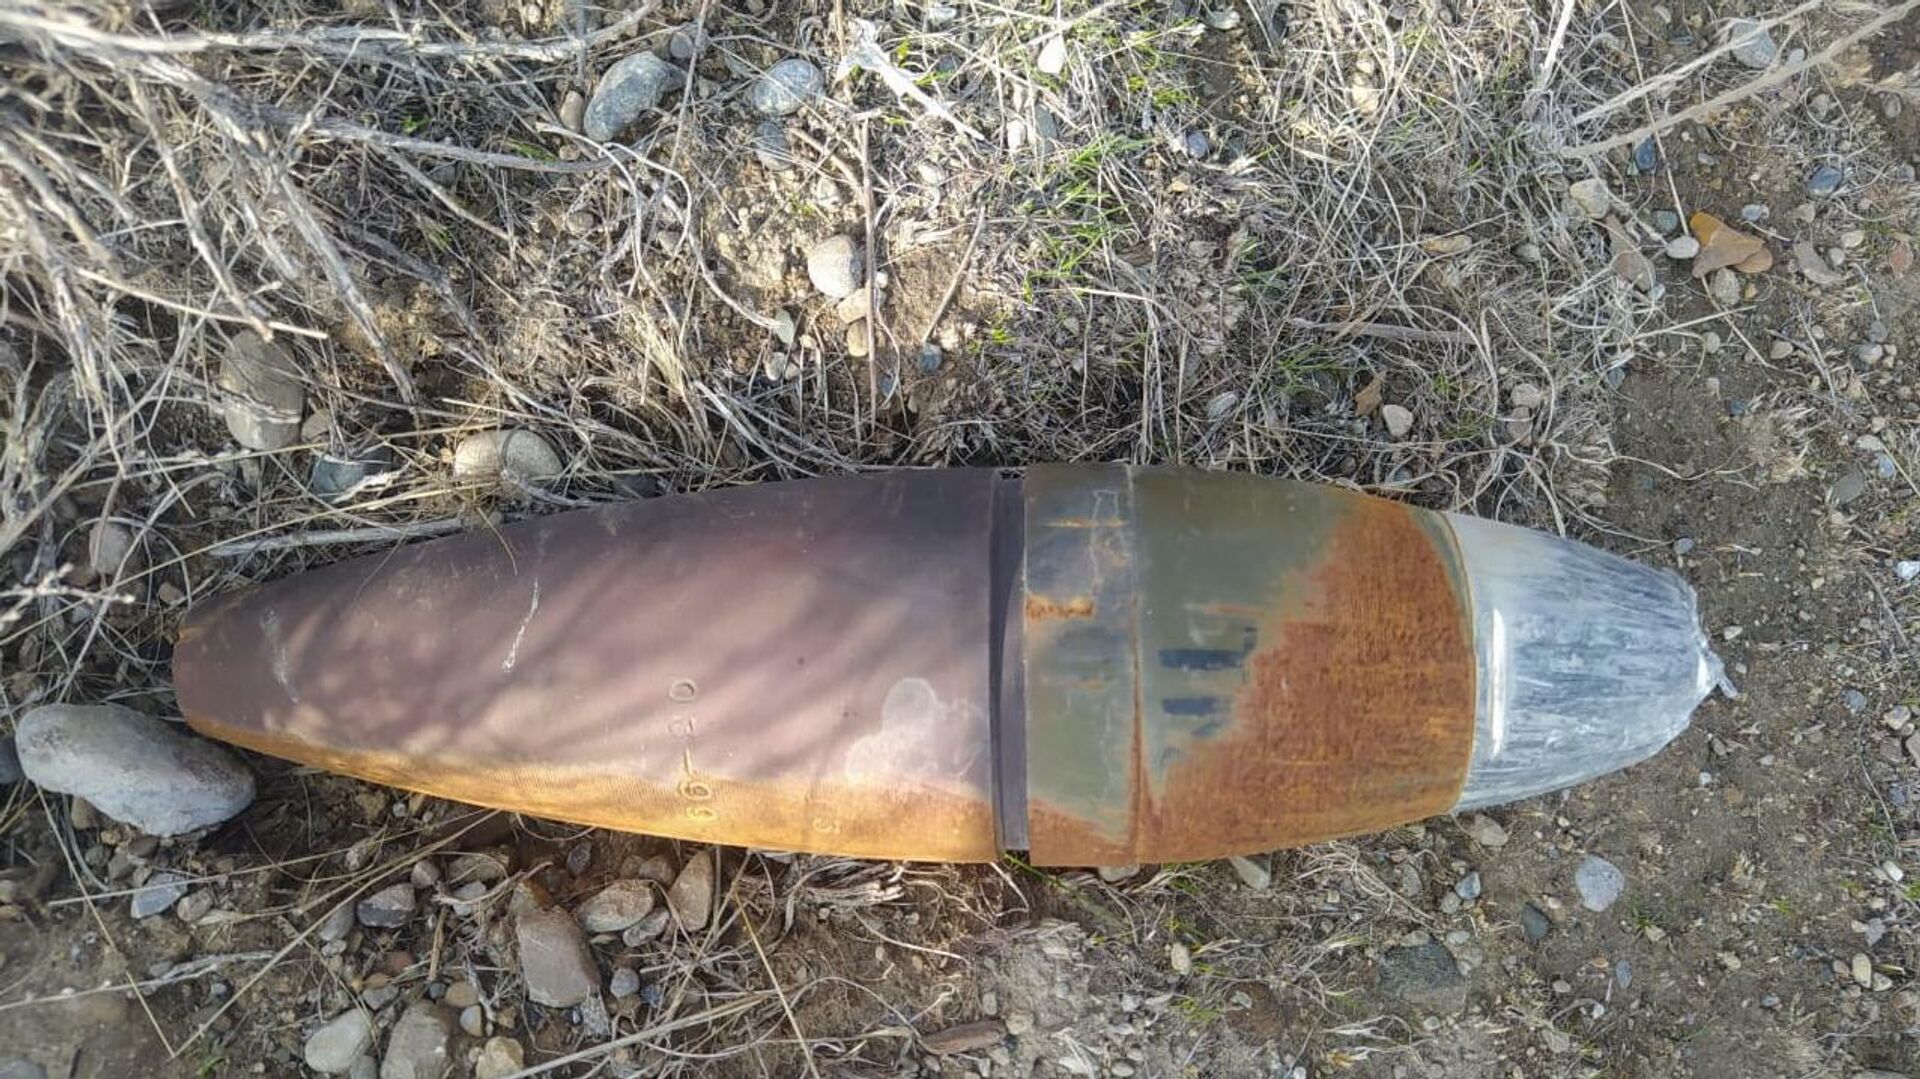 Обнаружение неразорвавшихся снарядов в приграничном районе Баткена  - Sputnik Кыргызстан, 1920, 18.01.2022